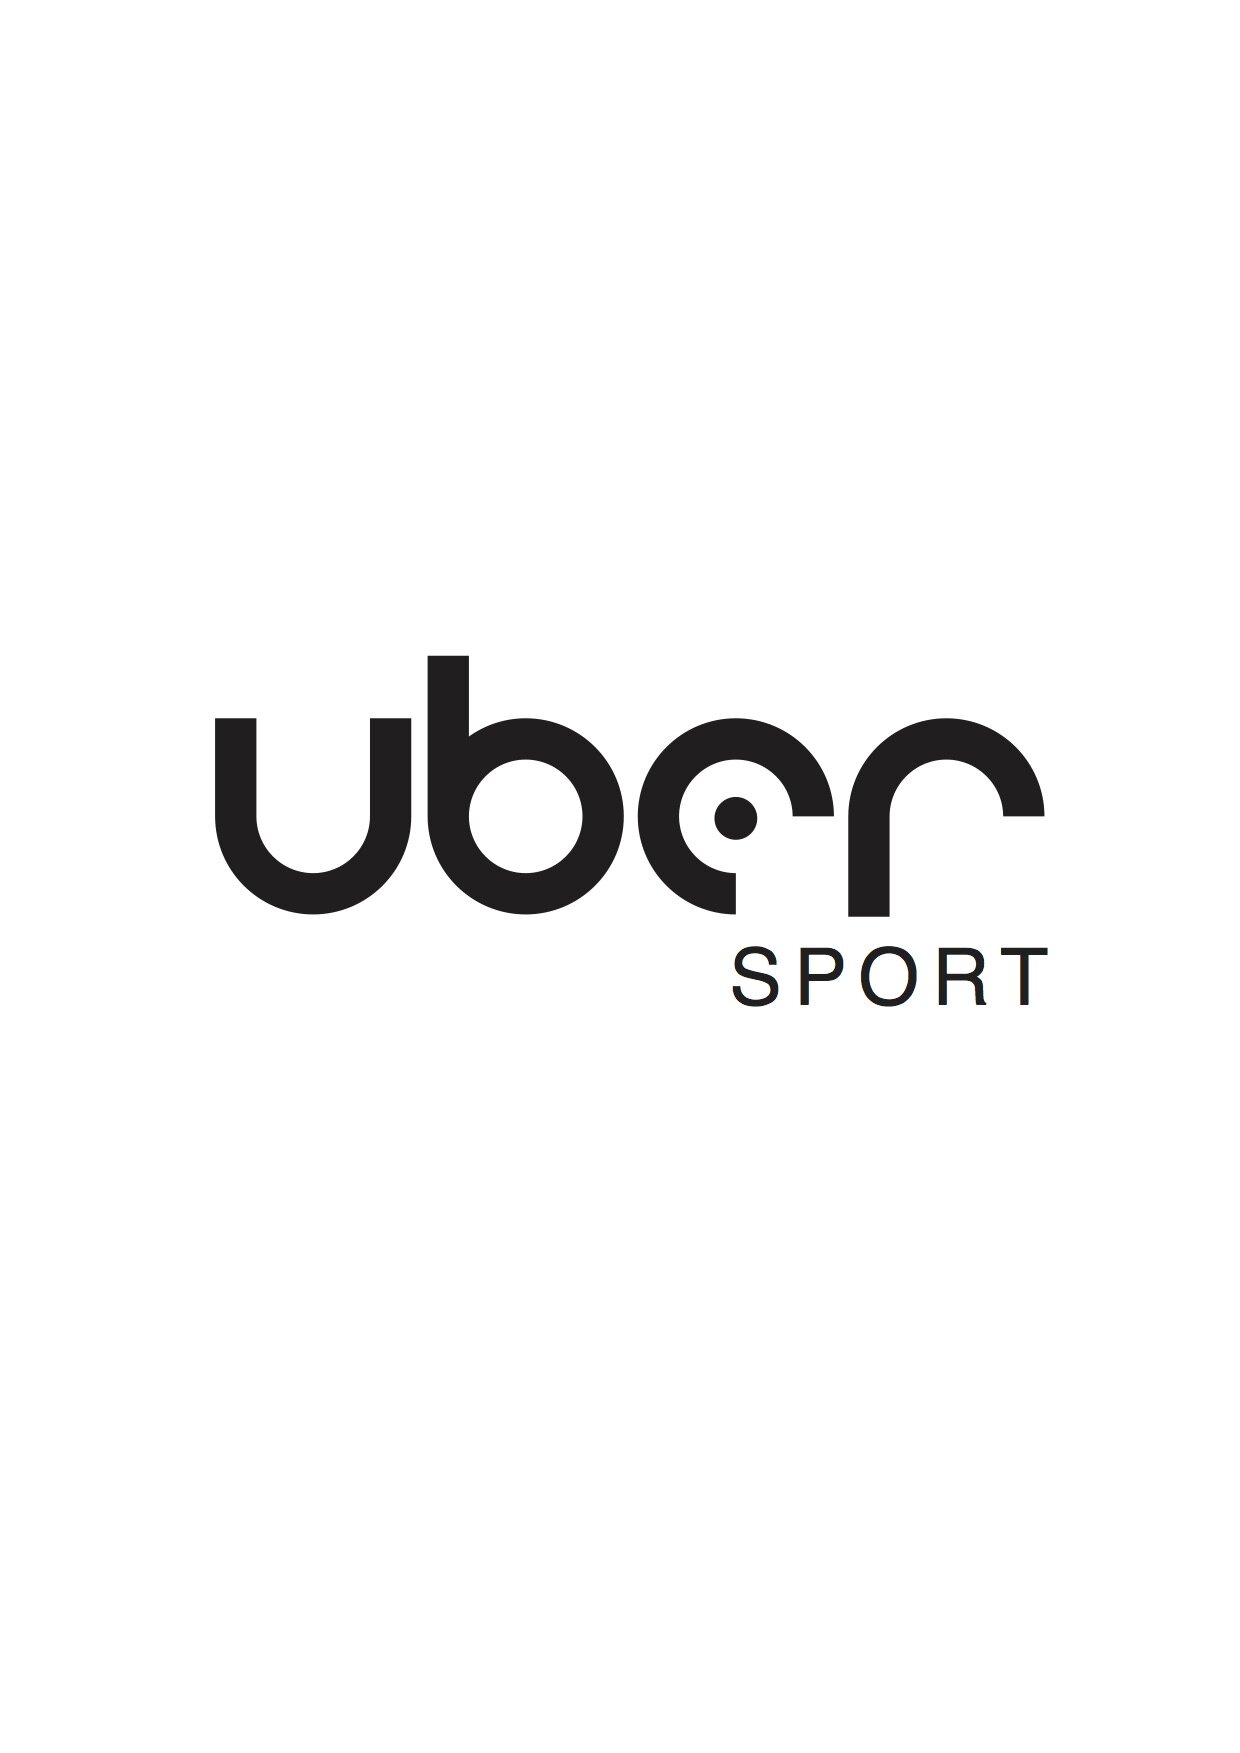 uber_sport_logo.jpg